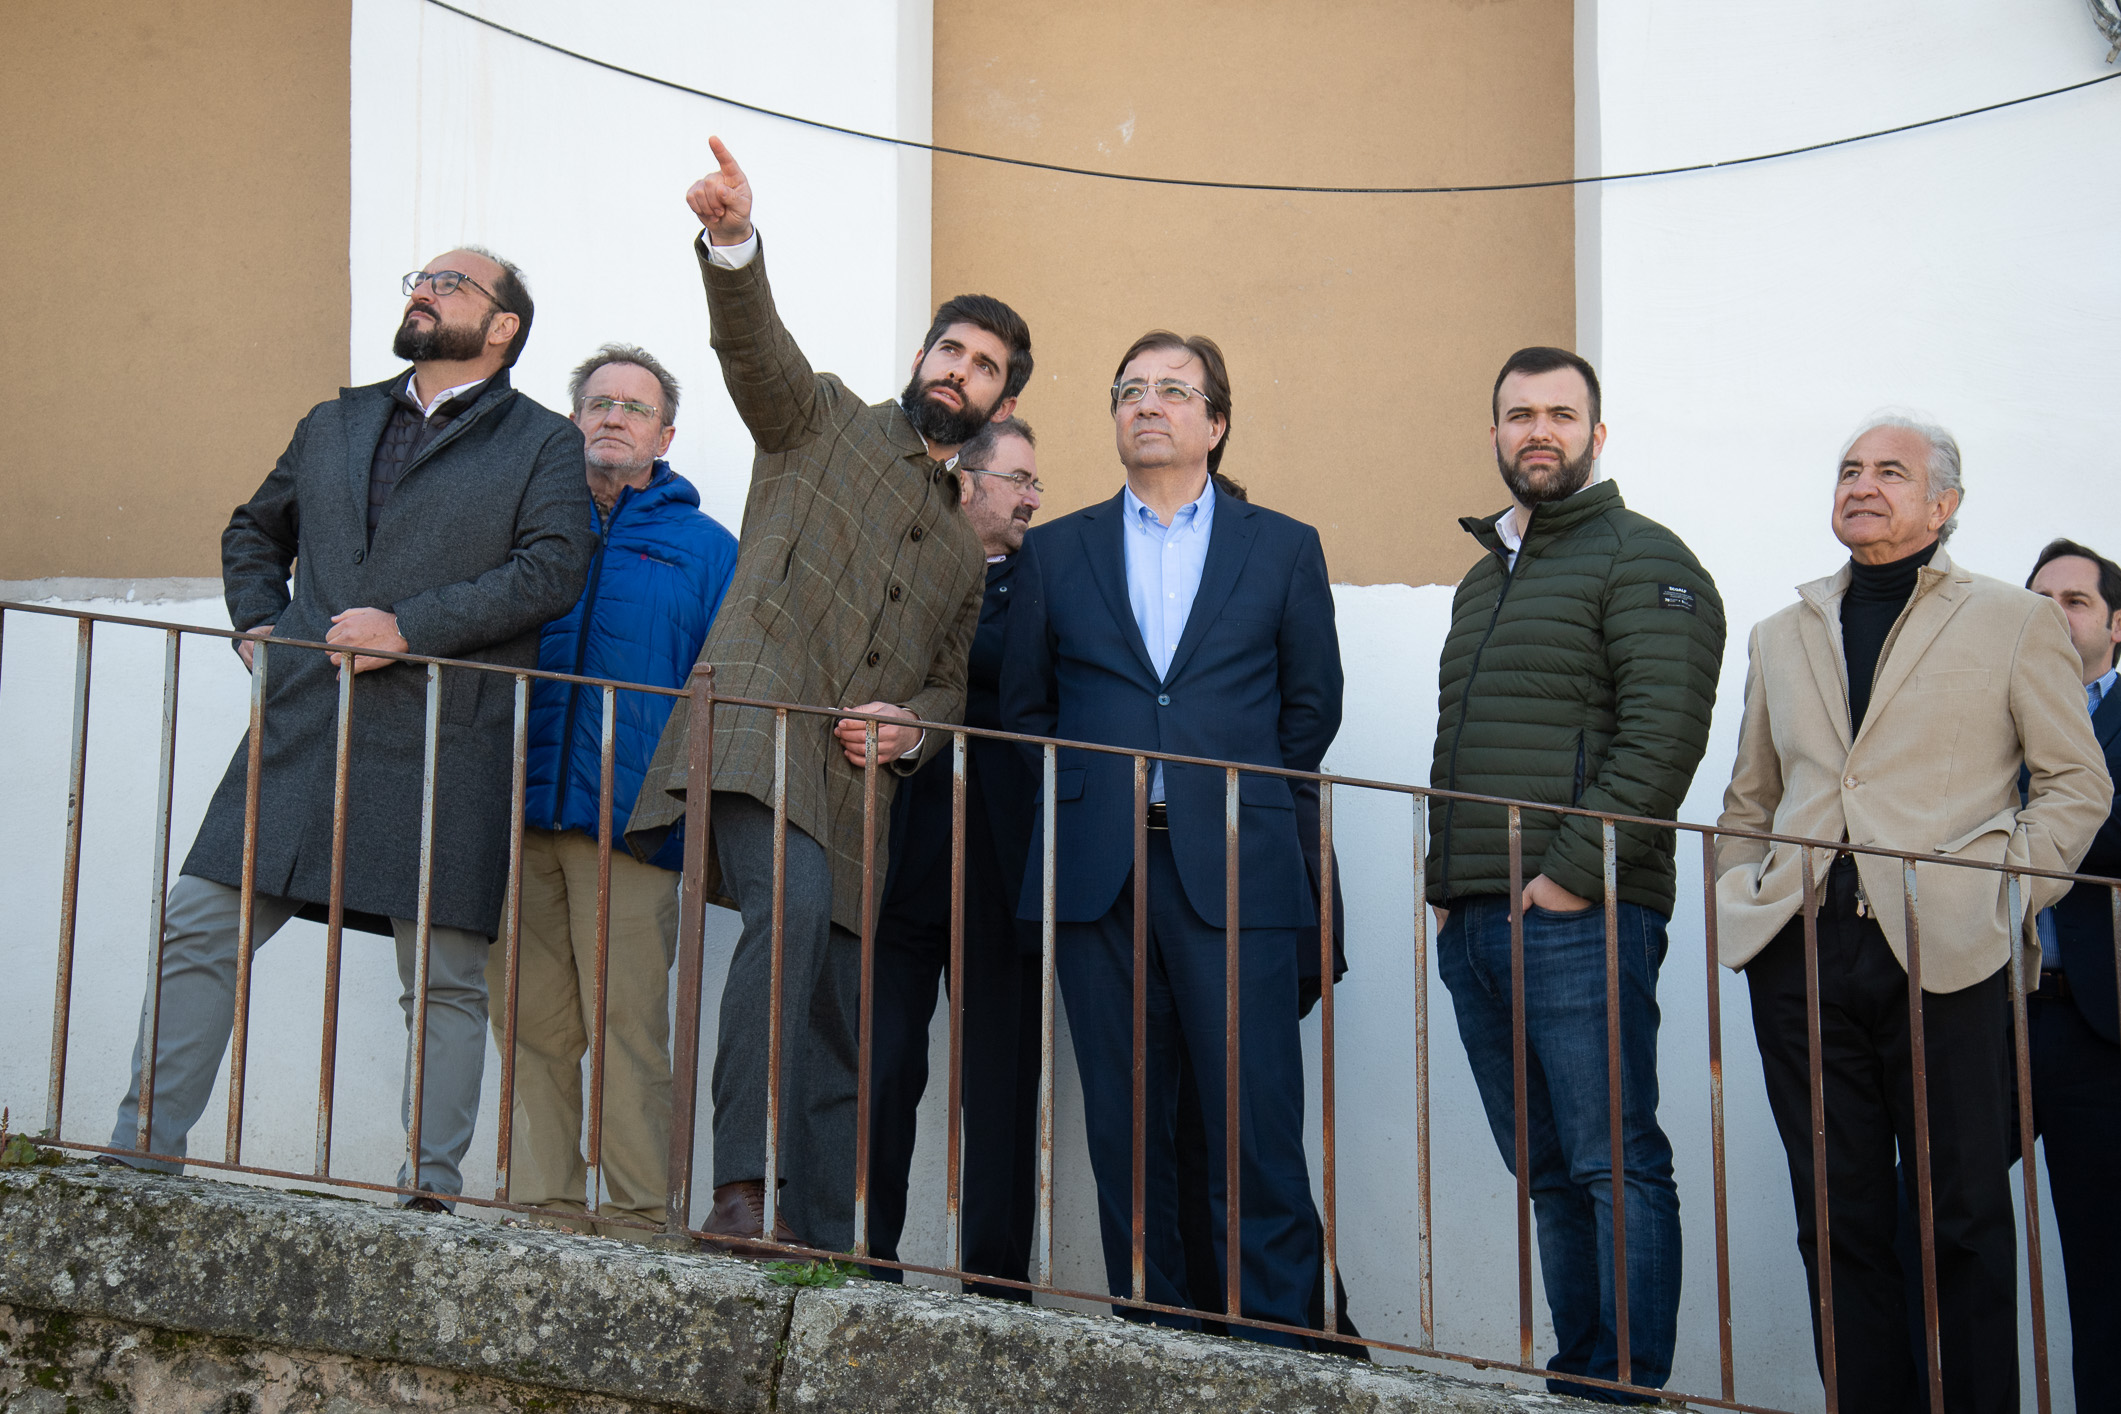 Foto del presidente de la Junta de Extremadura junto a otras autoridades durante la visita a las obras del Palacio de Godoy